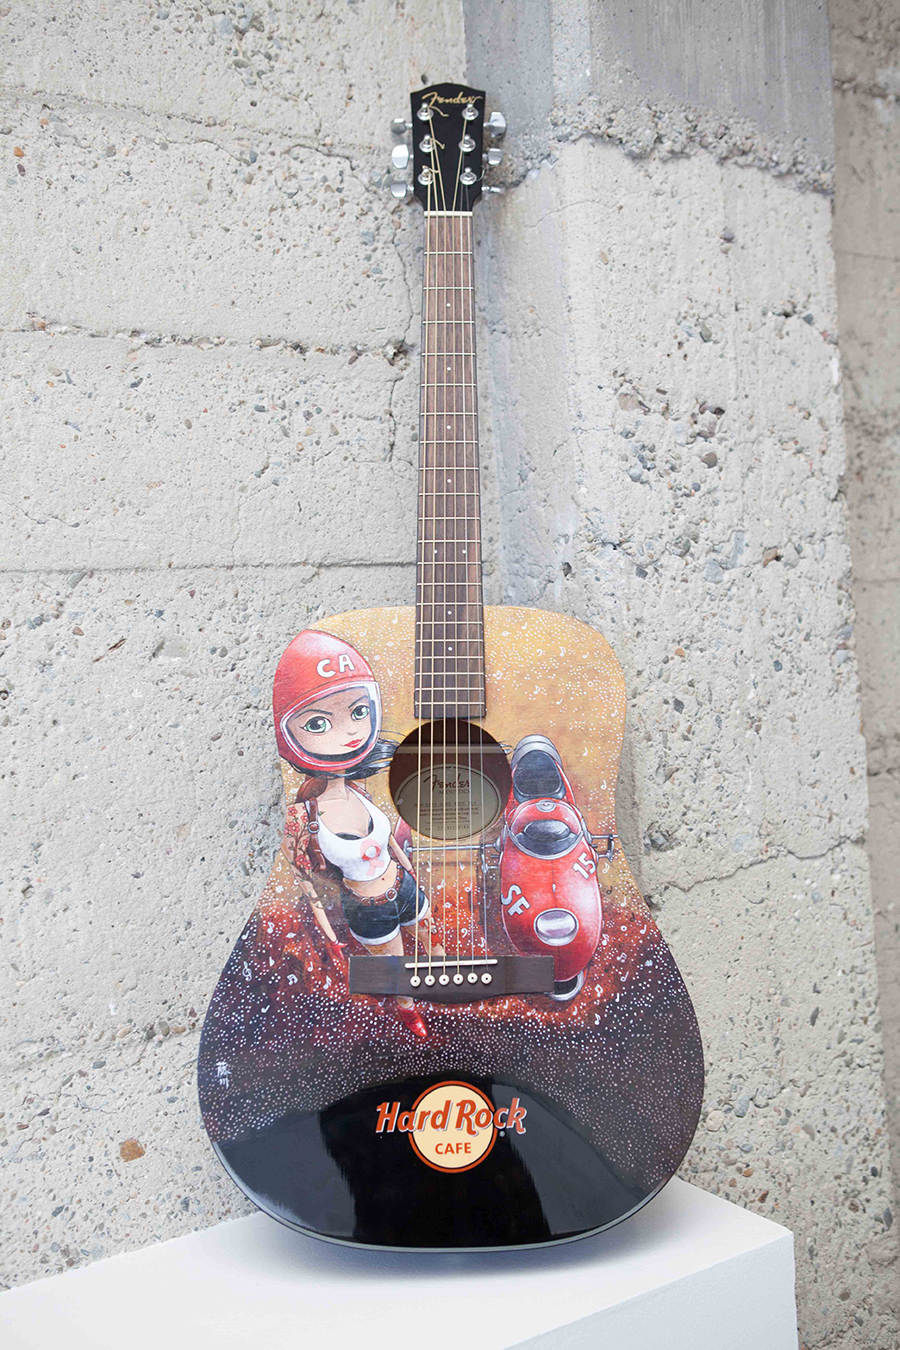 HARD ROCK CAFE give back art attack sf breast cancer awareness PinkTober art fender guitar